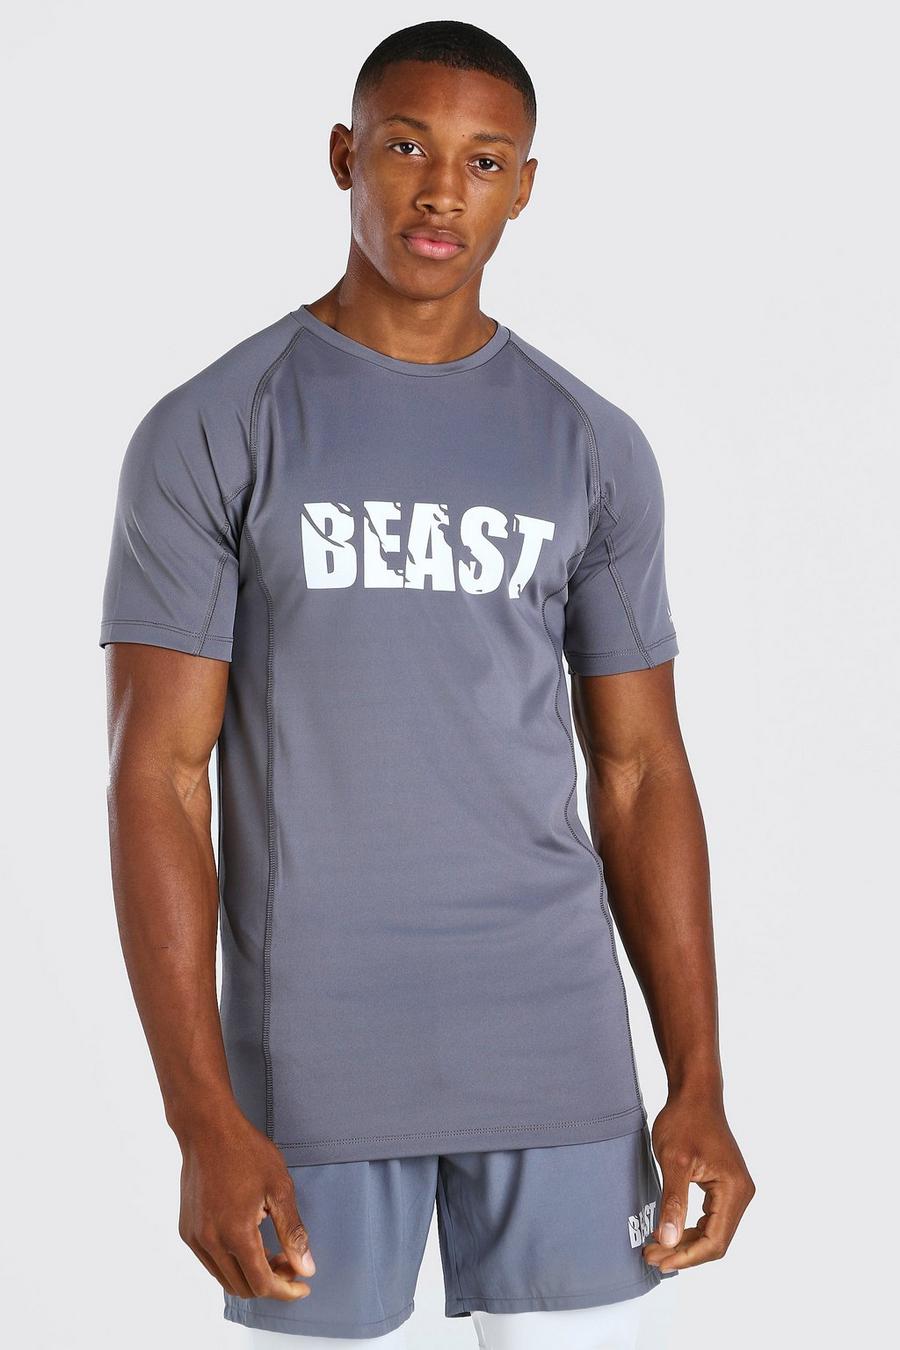 Houtskool MAN Active X compressie-T-shirt met beestenprint image number 1